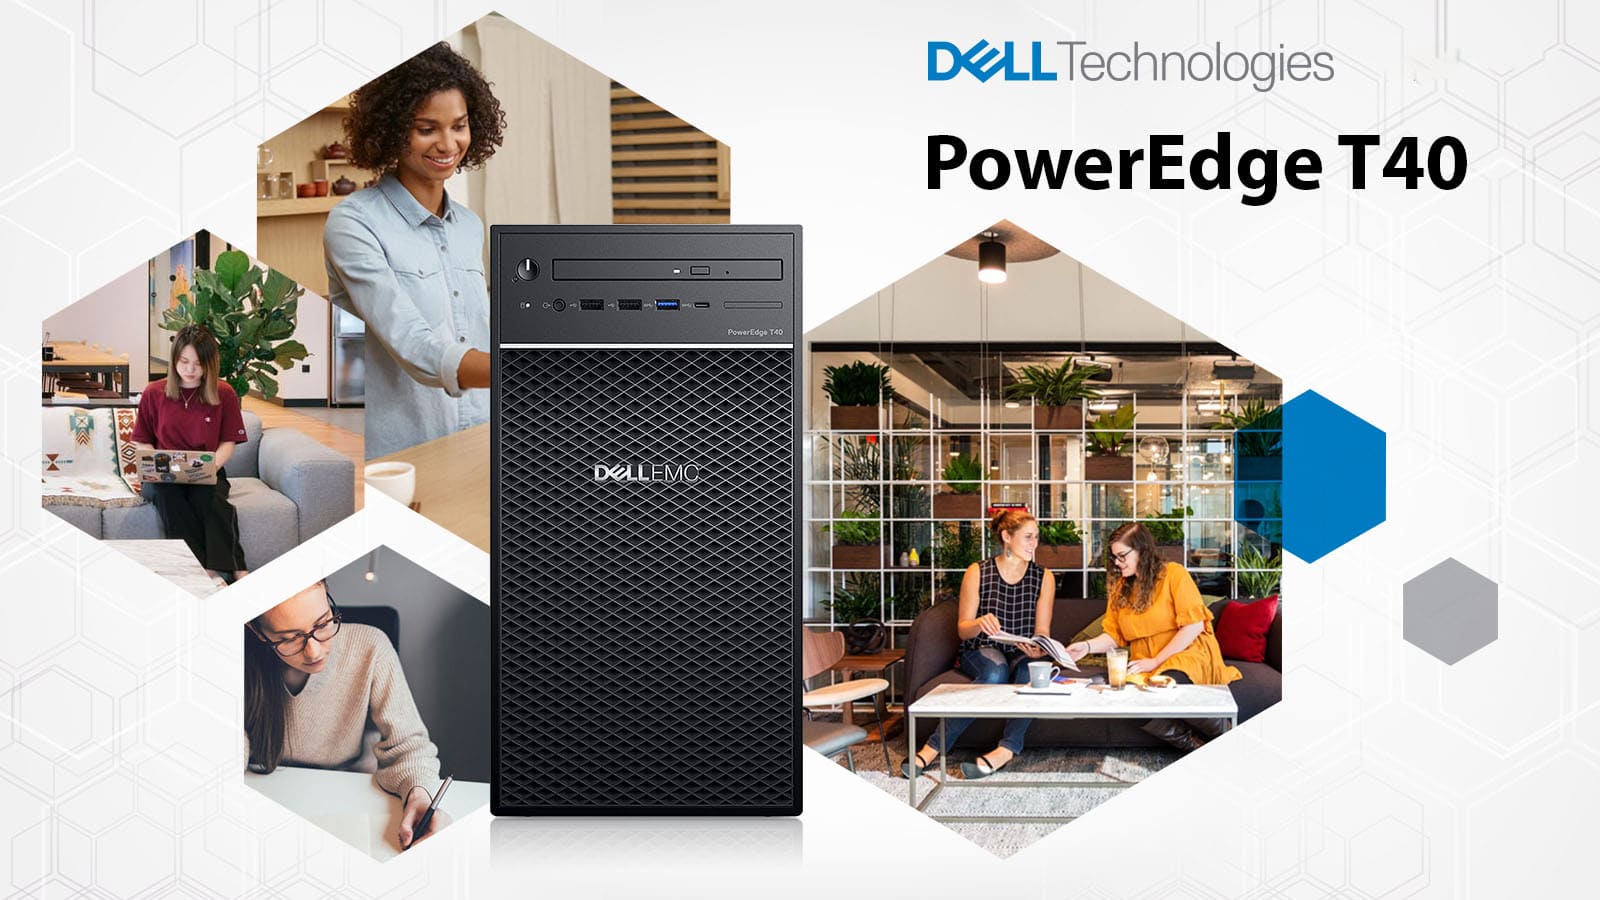 Dell EMC PowerEdge T40 - Lời giải cho doanh nghiệp nhỏ cần hệ thống máy chủ hiệu năng với giá thành hấp dẫn